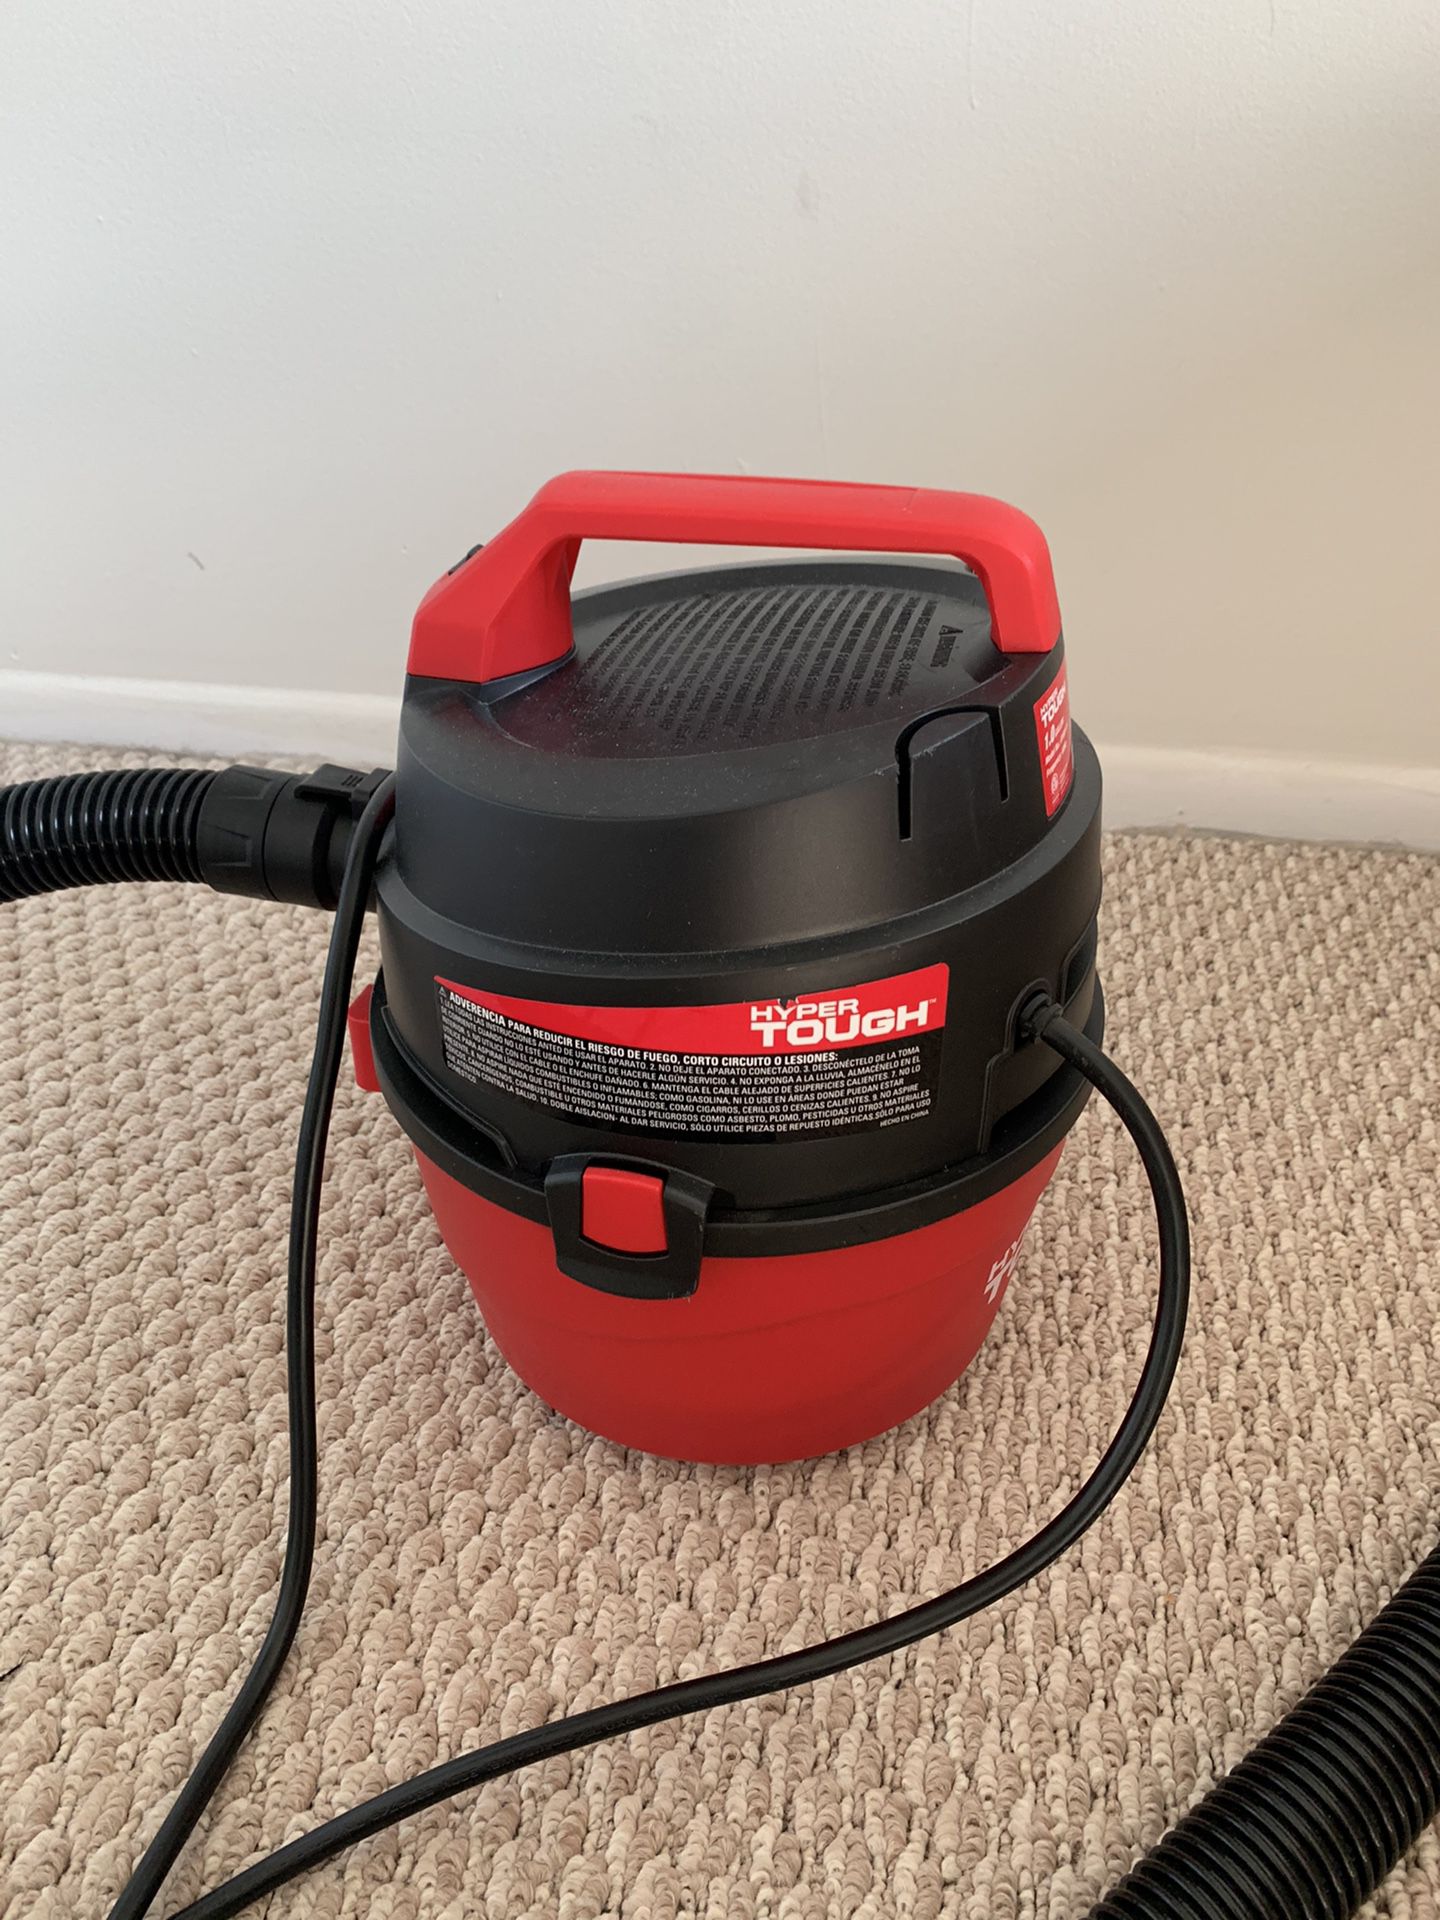 Wet/dry vacuum